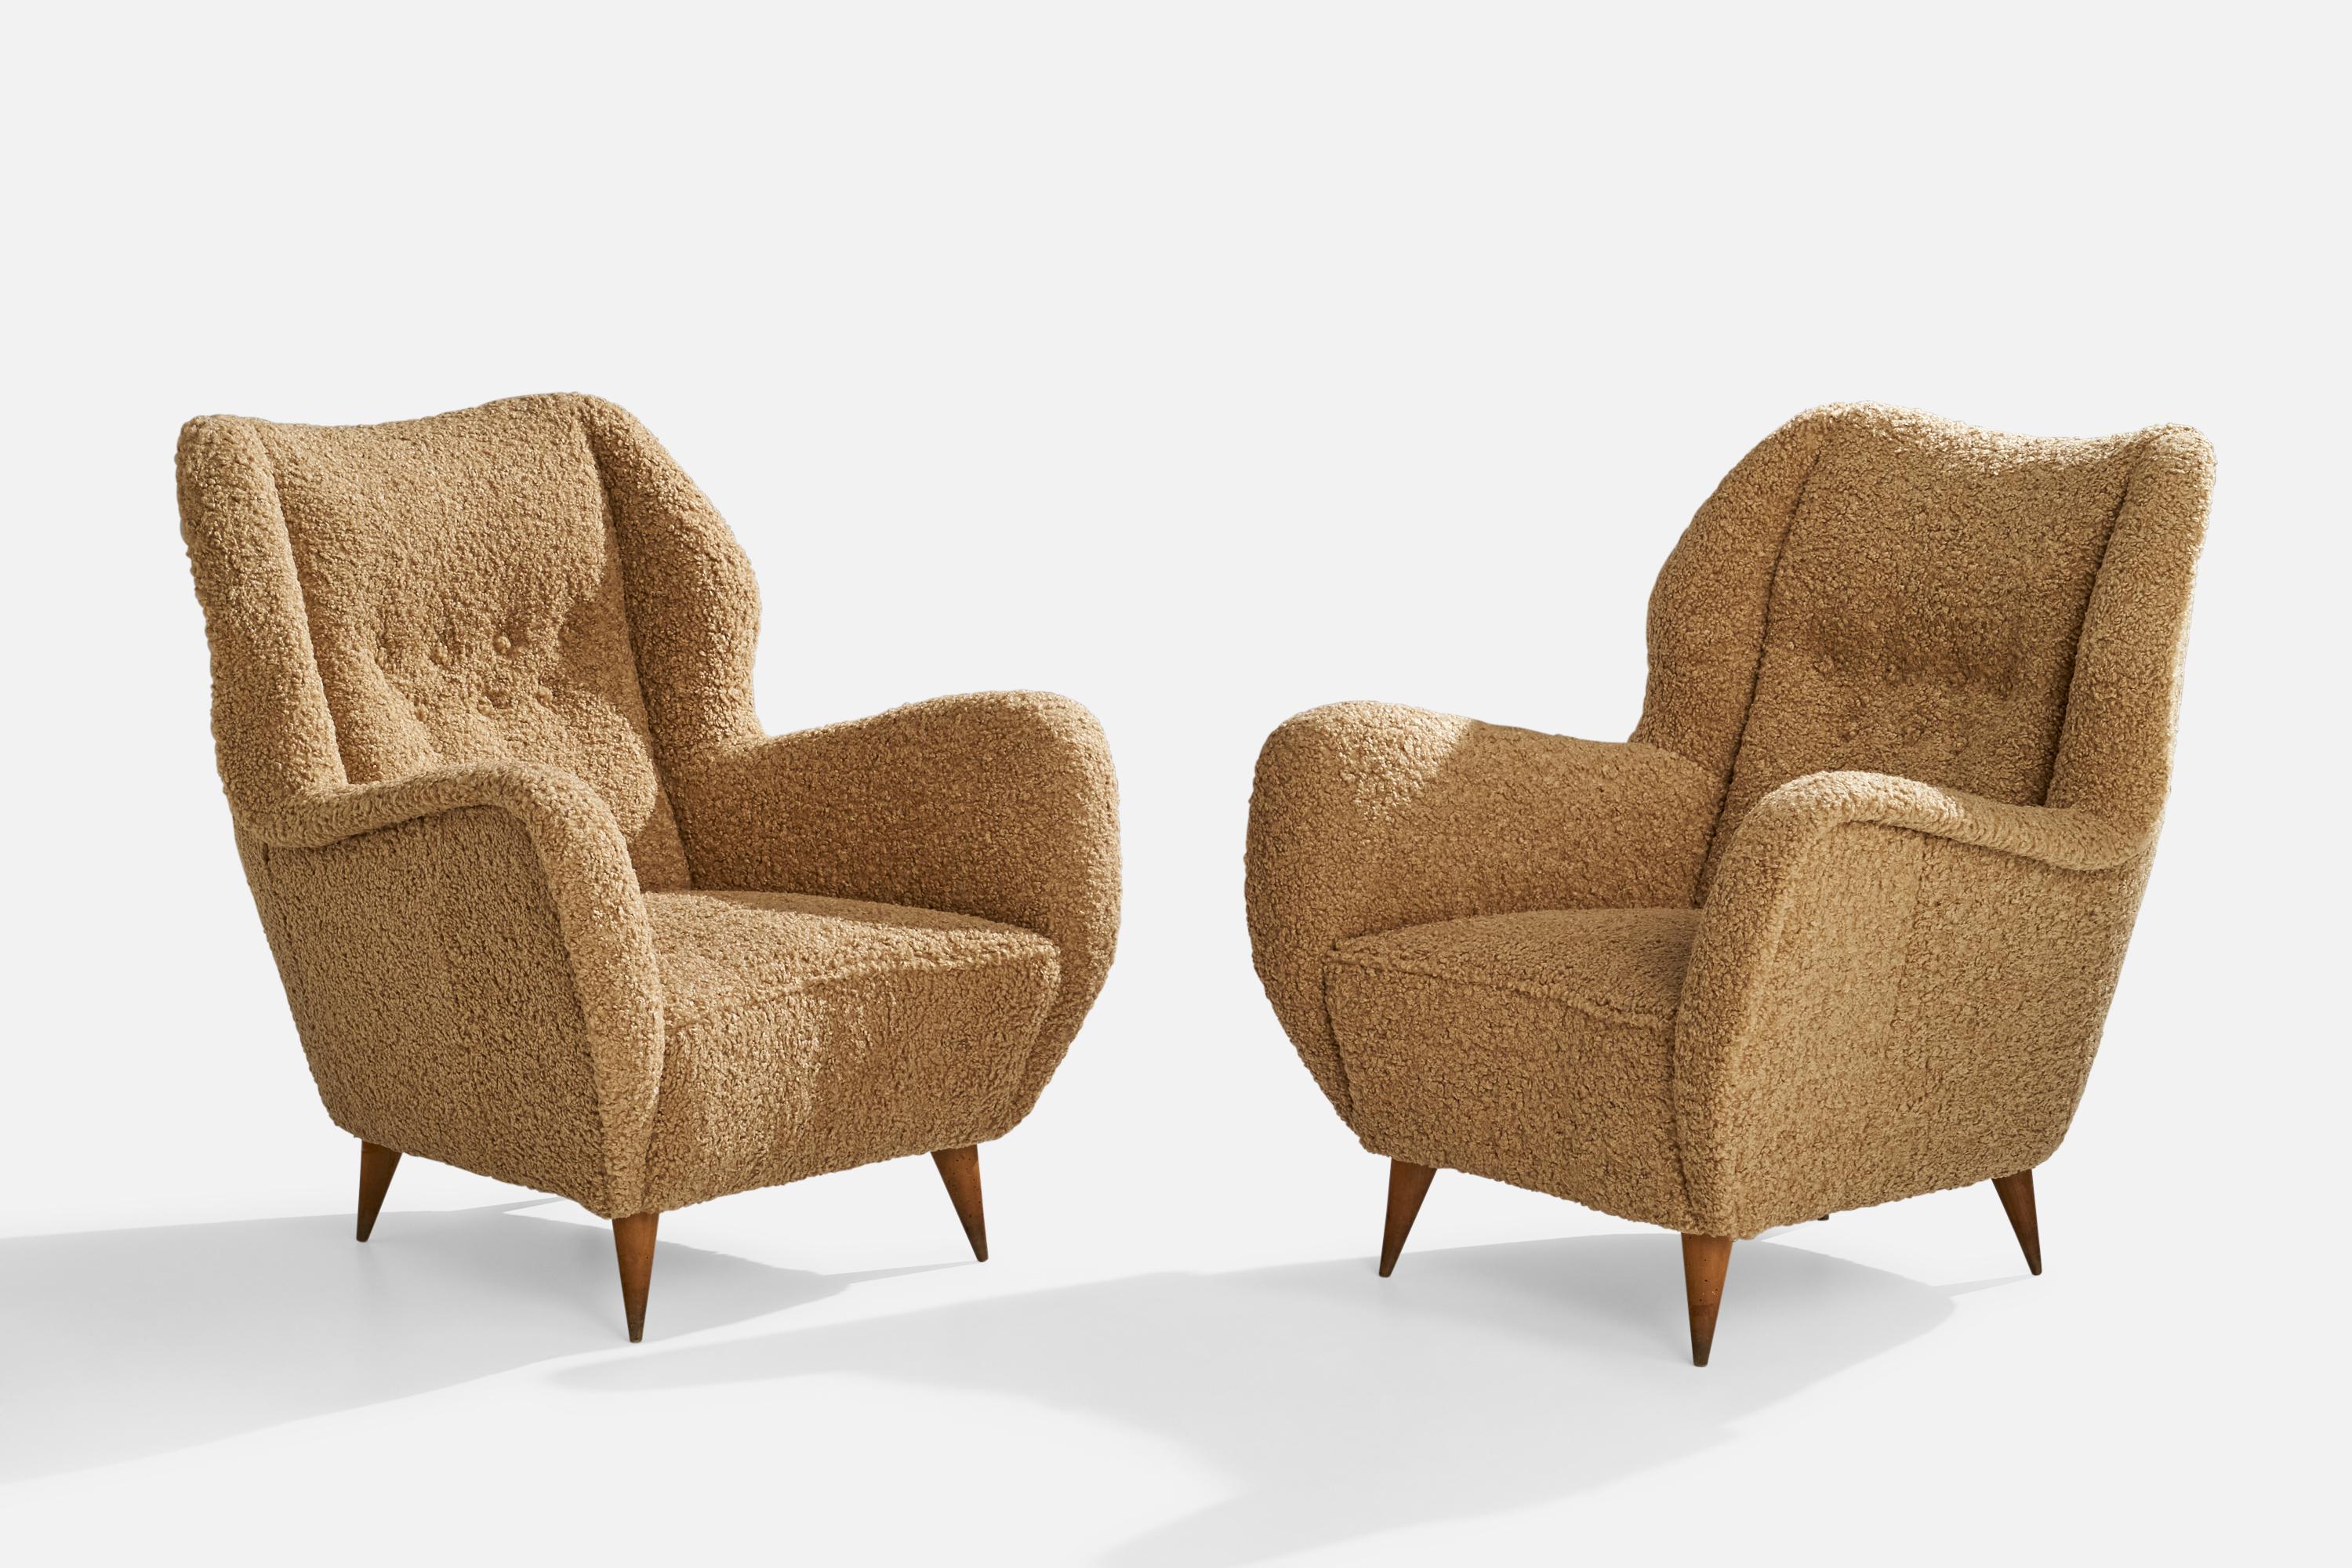 Ein Paar braun-beiger Sessel aus Bouclé-Stoff und Holz, entworfen und hergestellt in Italien, ca. 1940er Jahre.

Sitzhöhe 15